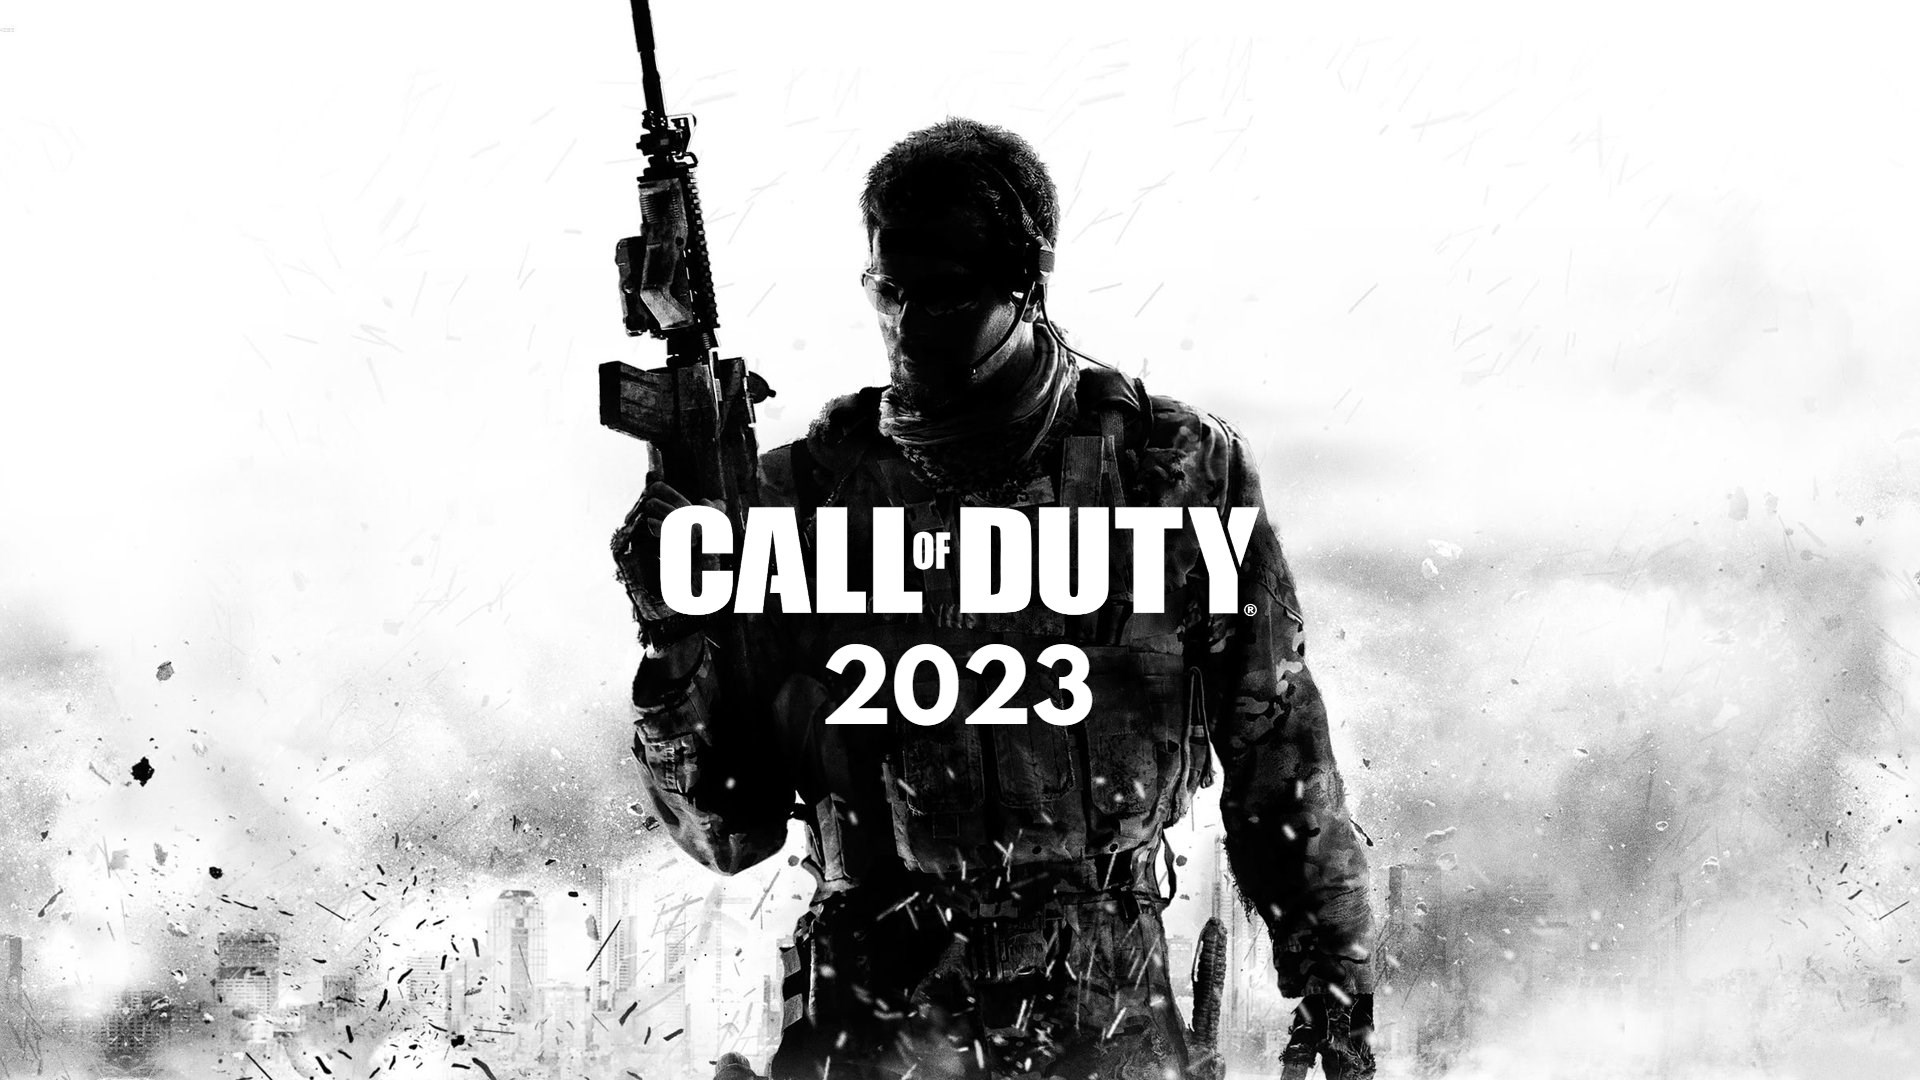 Call of Duty 2023 için yeni duyuru tarihi paylaşıldı